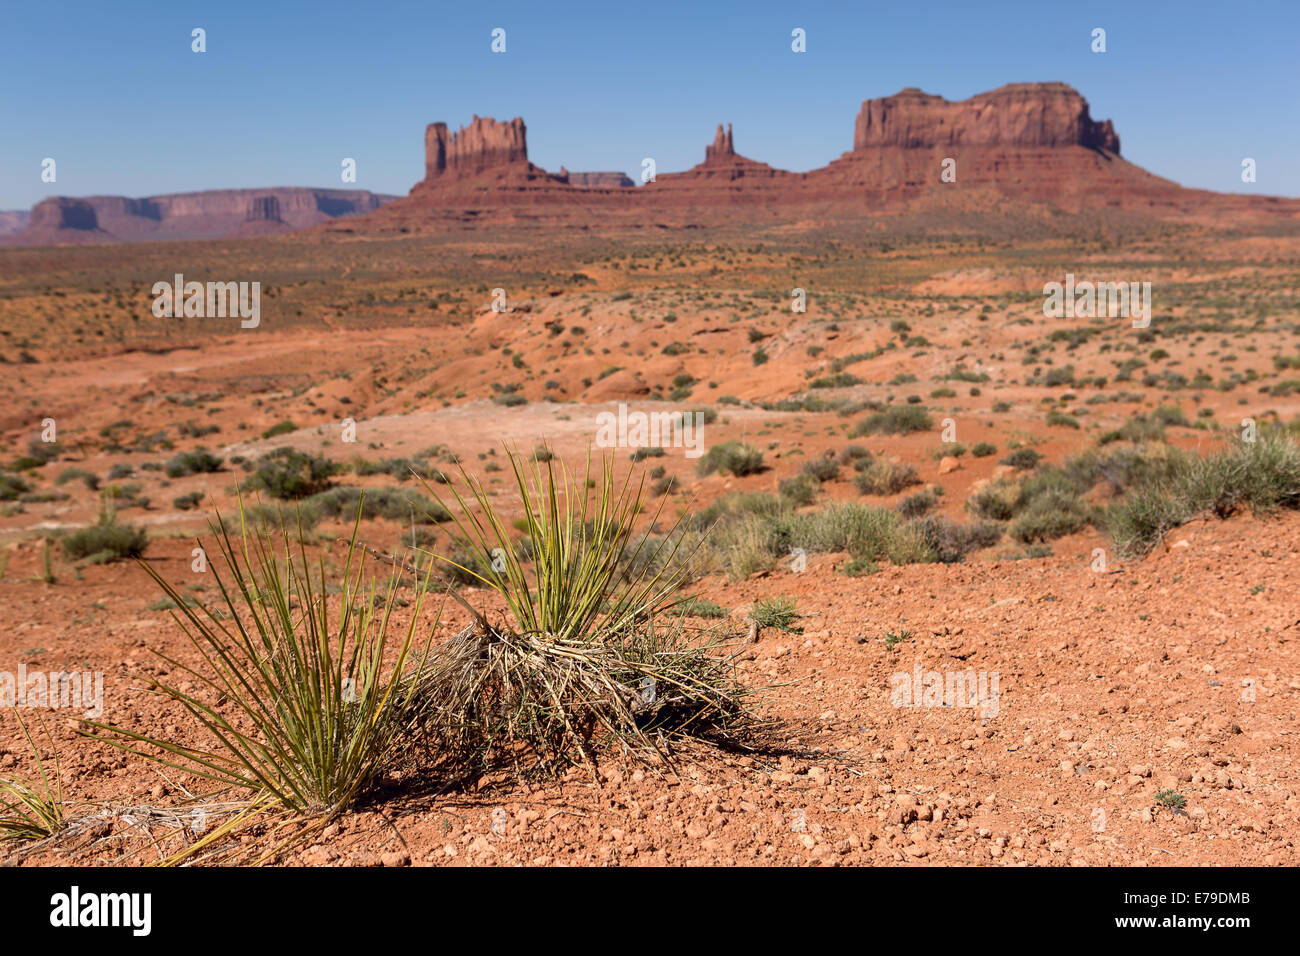 Yucca piante nel deserto con la Monument Valley tribal park in background Foto Stock